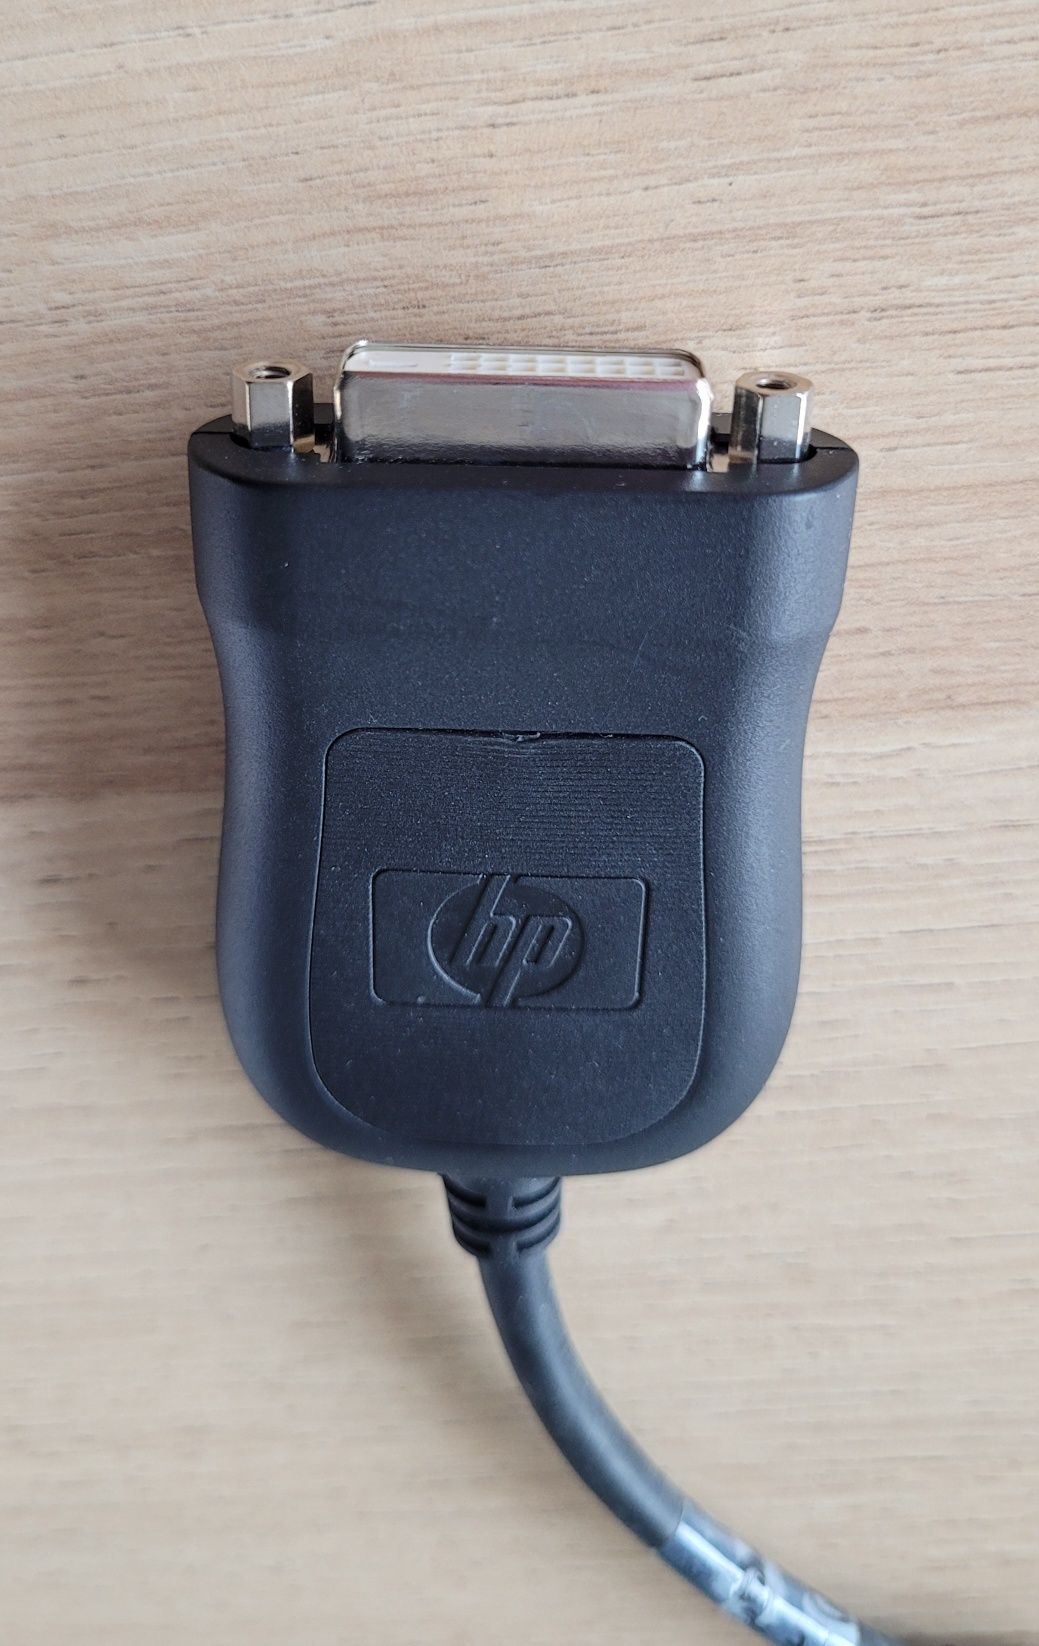 Adapter HP kabel przejściówka
KABEL PRZEJŚCIÓWKA

DISPLAYPO